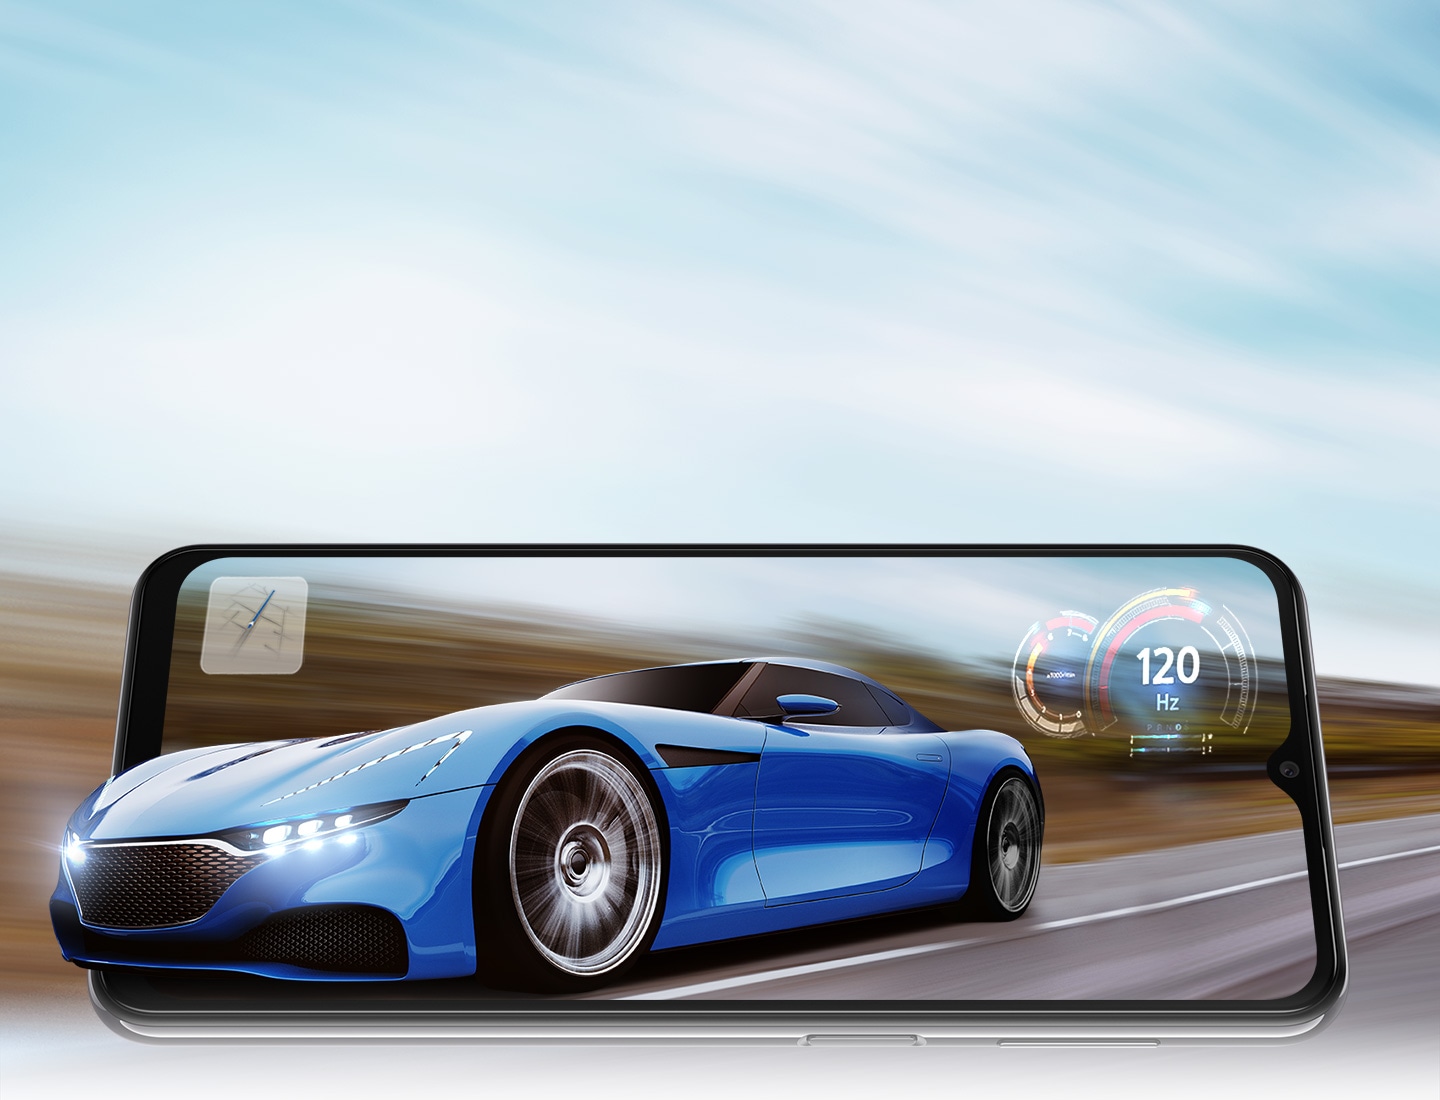 Galaxy A23 5G je u pejzažnom načinu rada, a na ekranu je sportski automobil koji vozi cestom. Pozadina je zamućena kako bi se pokazalo da se vozi brzo. Prednji dio automobila malo se proteže izvan okvira telefona kao da automobil iskače iz zaslona. Tu su i karta i brzinomjer sa 120 Hz u sredini, što se odnosi na brzu brzinu osvježavanja telefona.